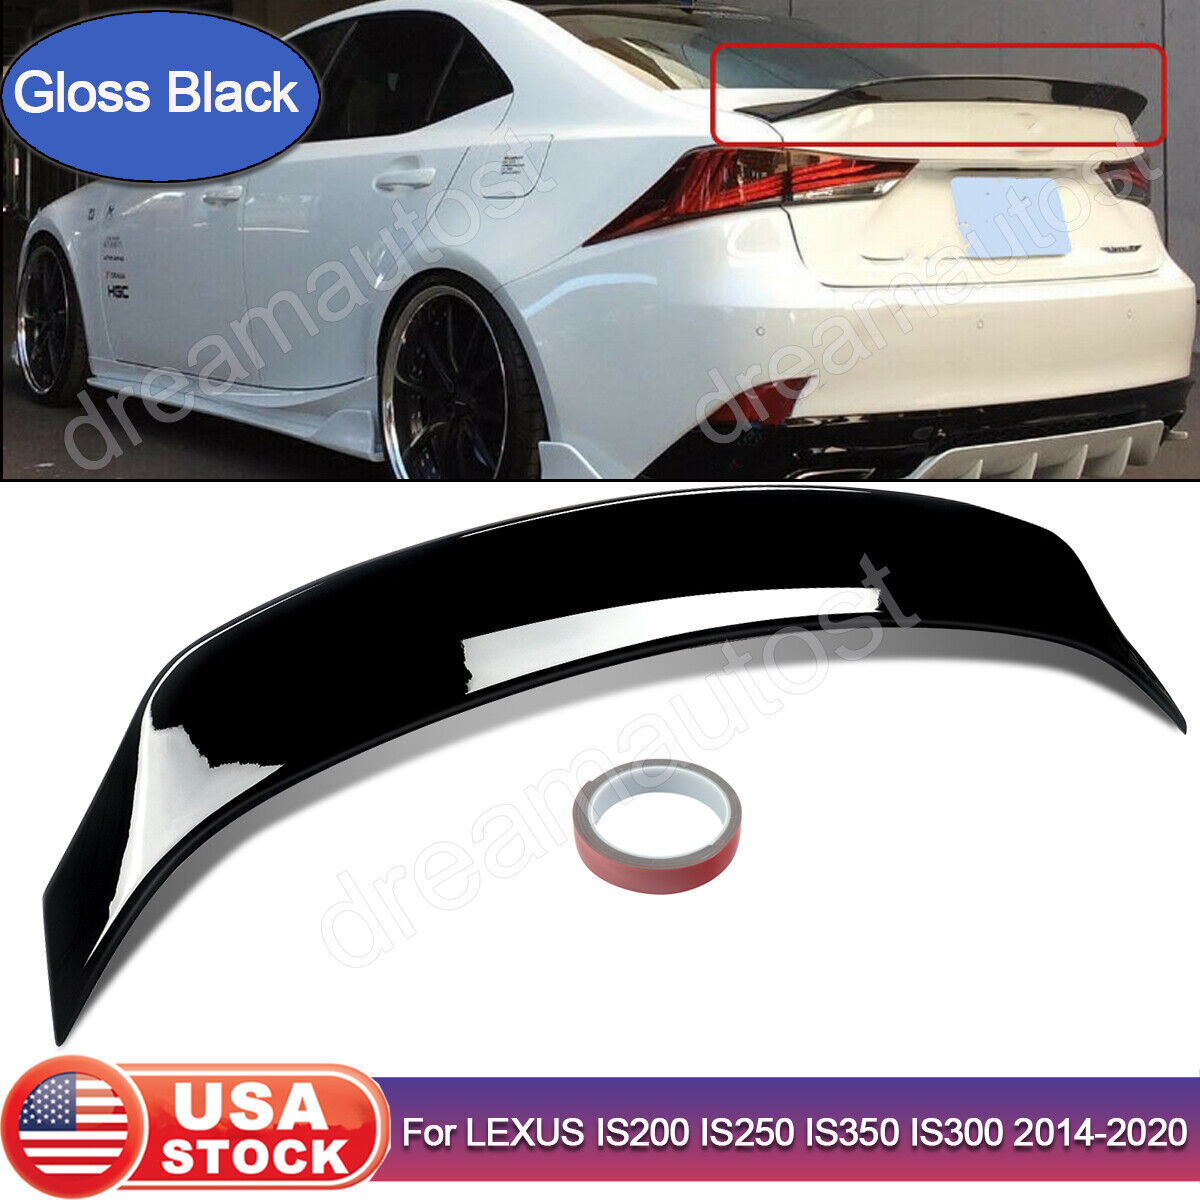 Gloss Black Duckbill Rear Trunk Spoiler Wing For Lexus IS200 IS250 IS350 IS300